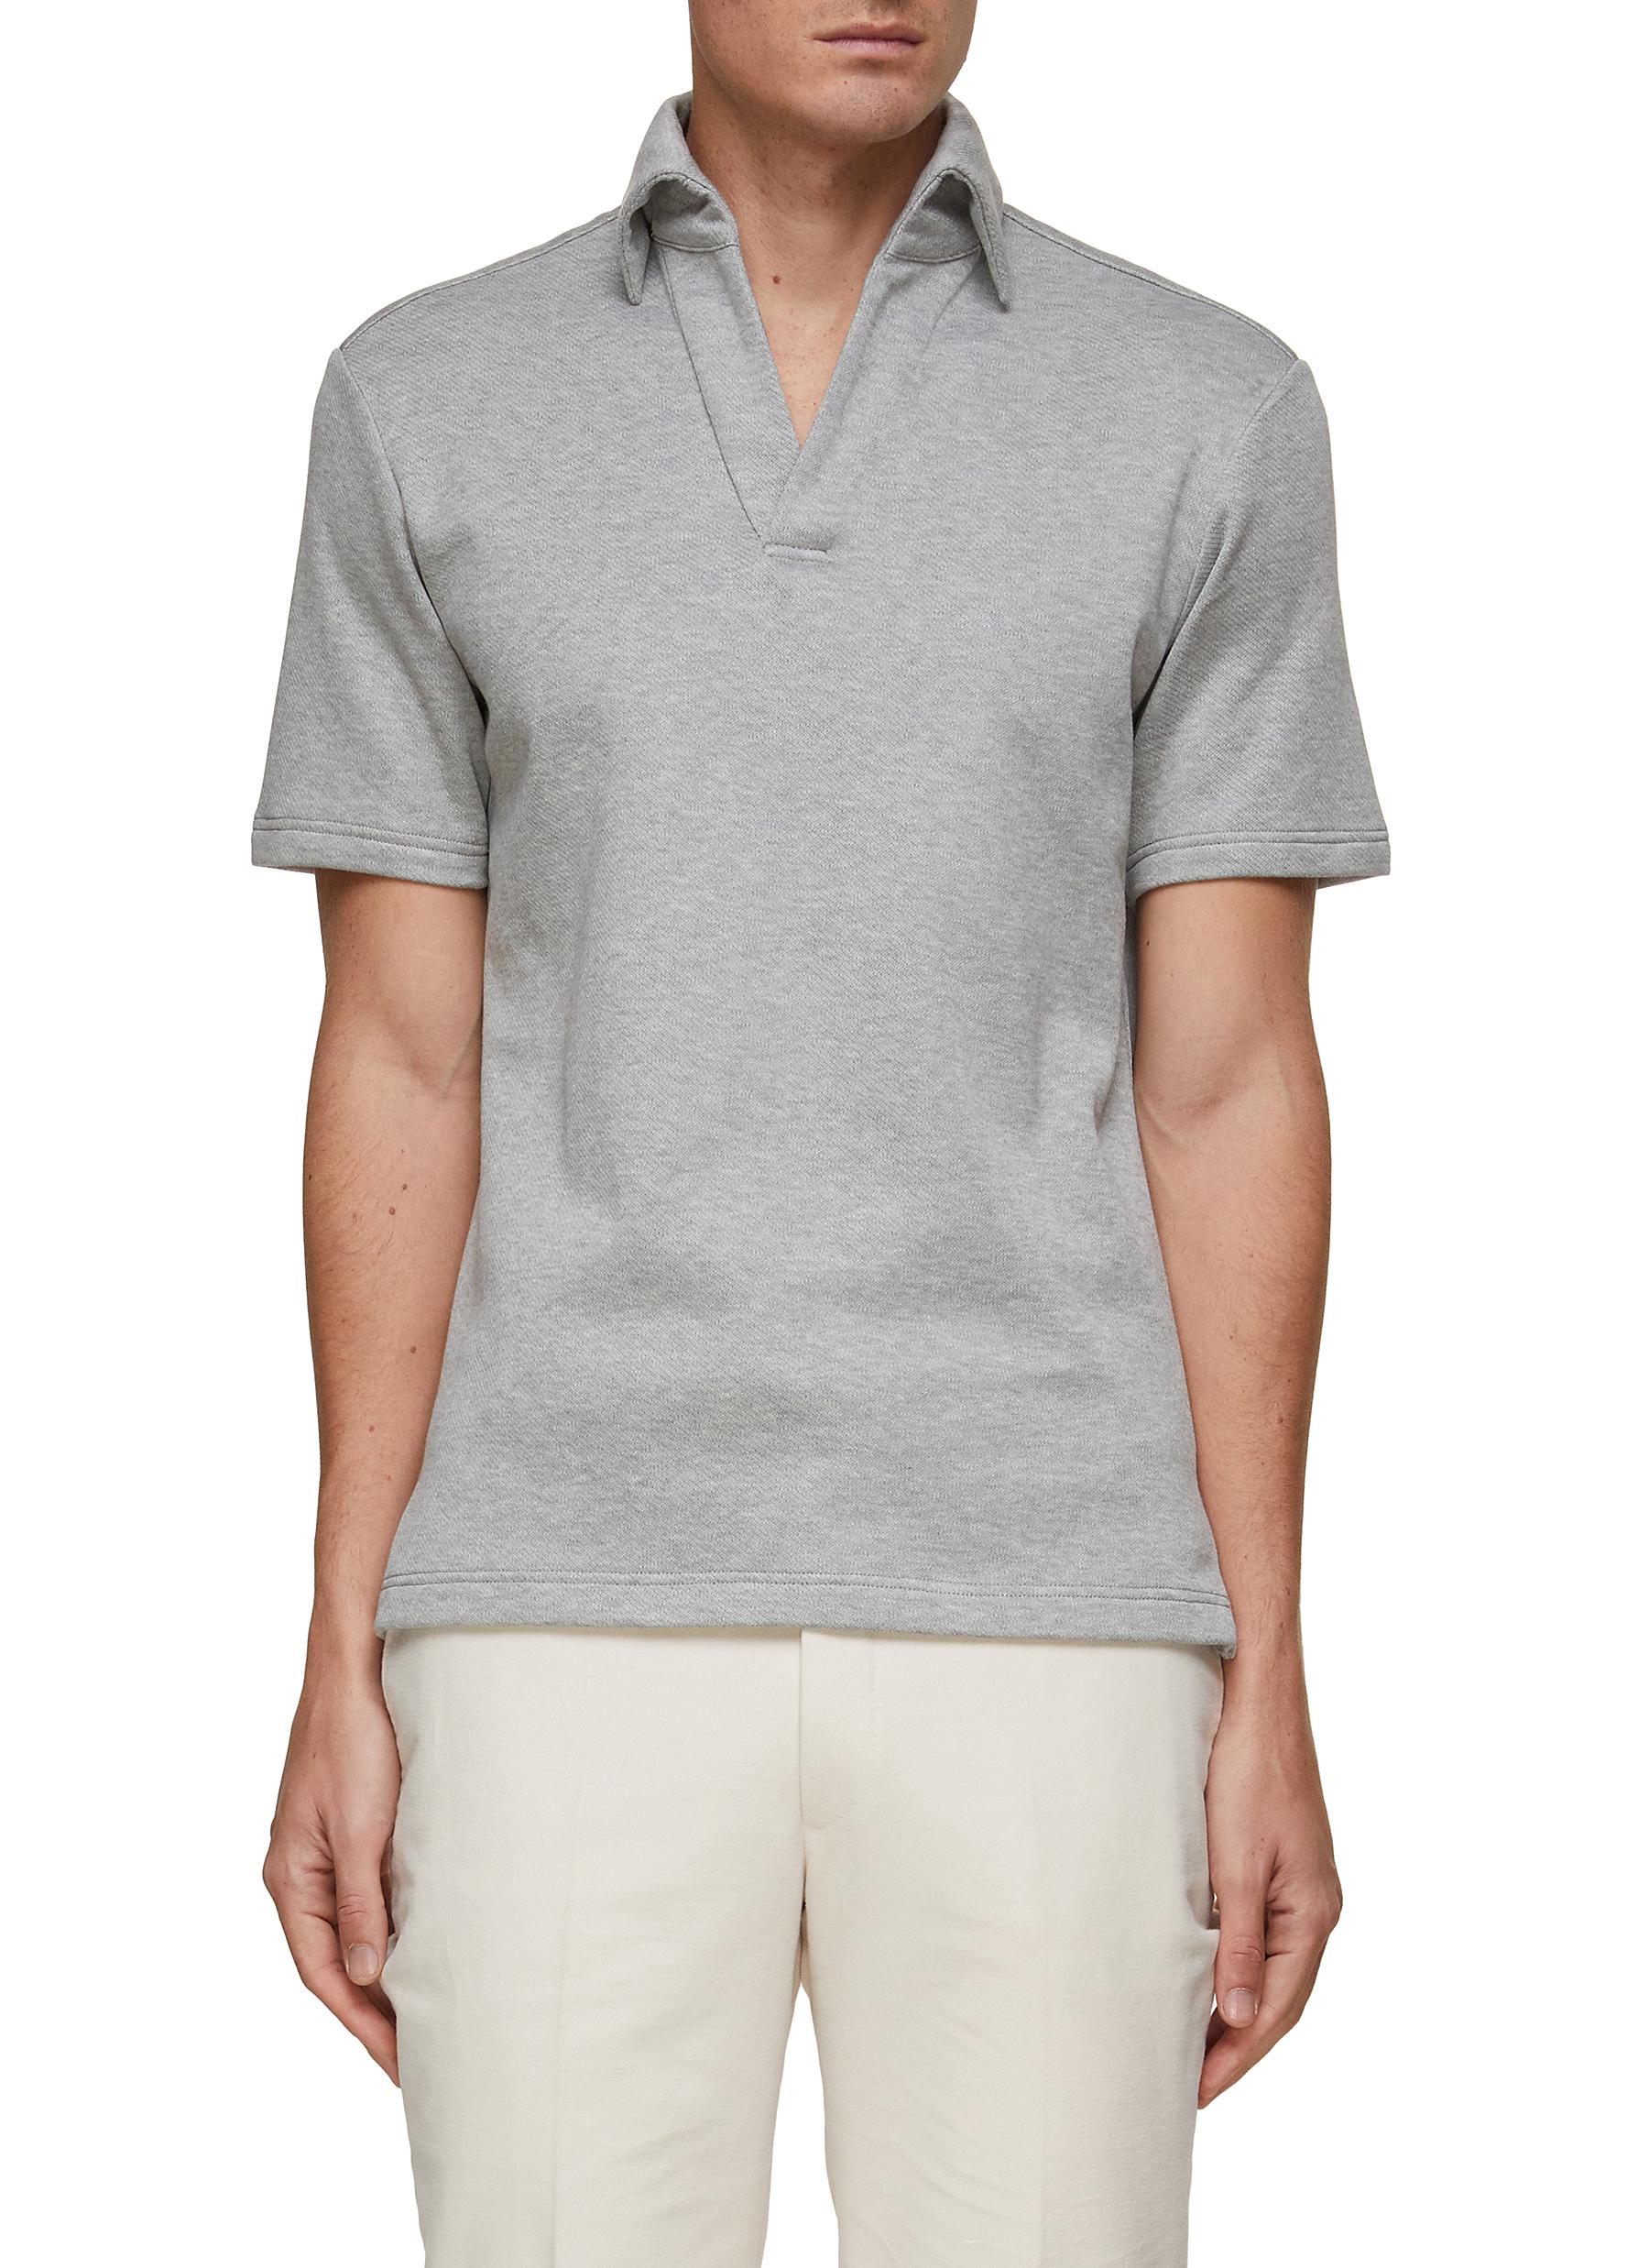 MAGNUS & NOVUS Open Collar Cotton Polo Shirt